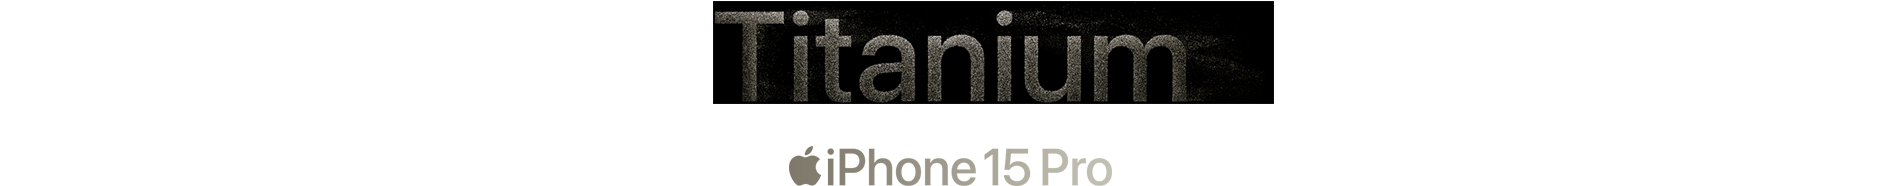 Titanium iPhone 15 Pro